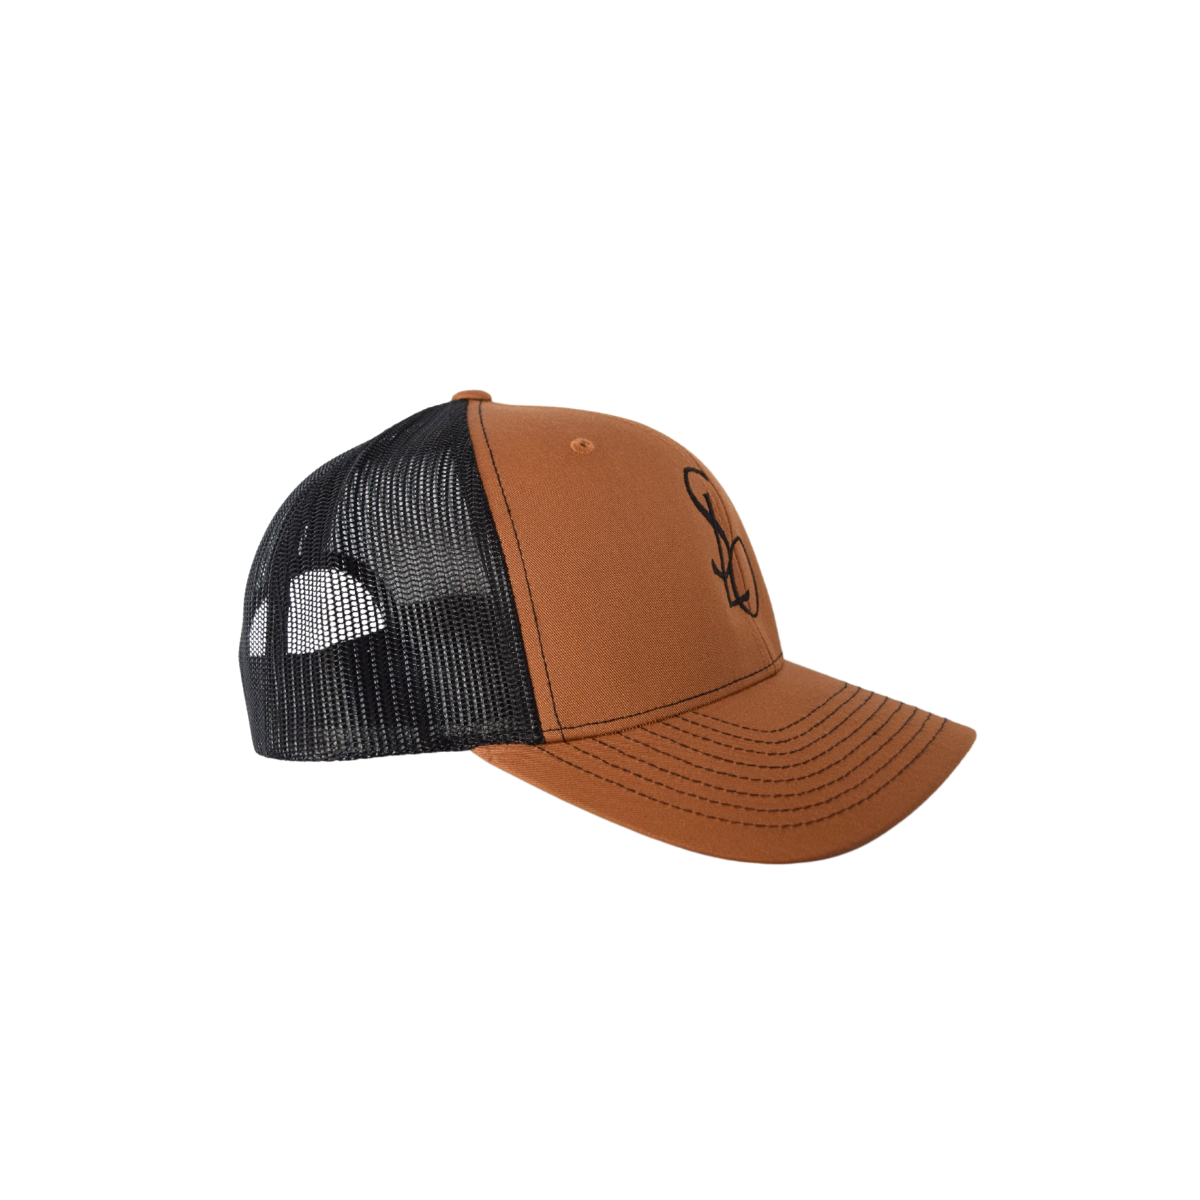 Branded SLO Designer-Inspired Baseball Hat in Caramel & Black